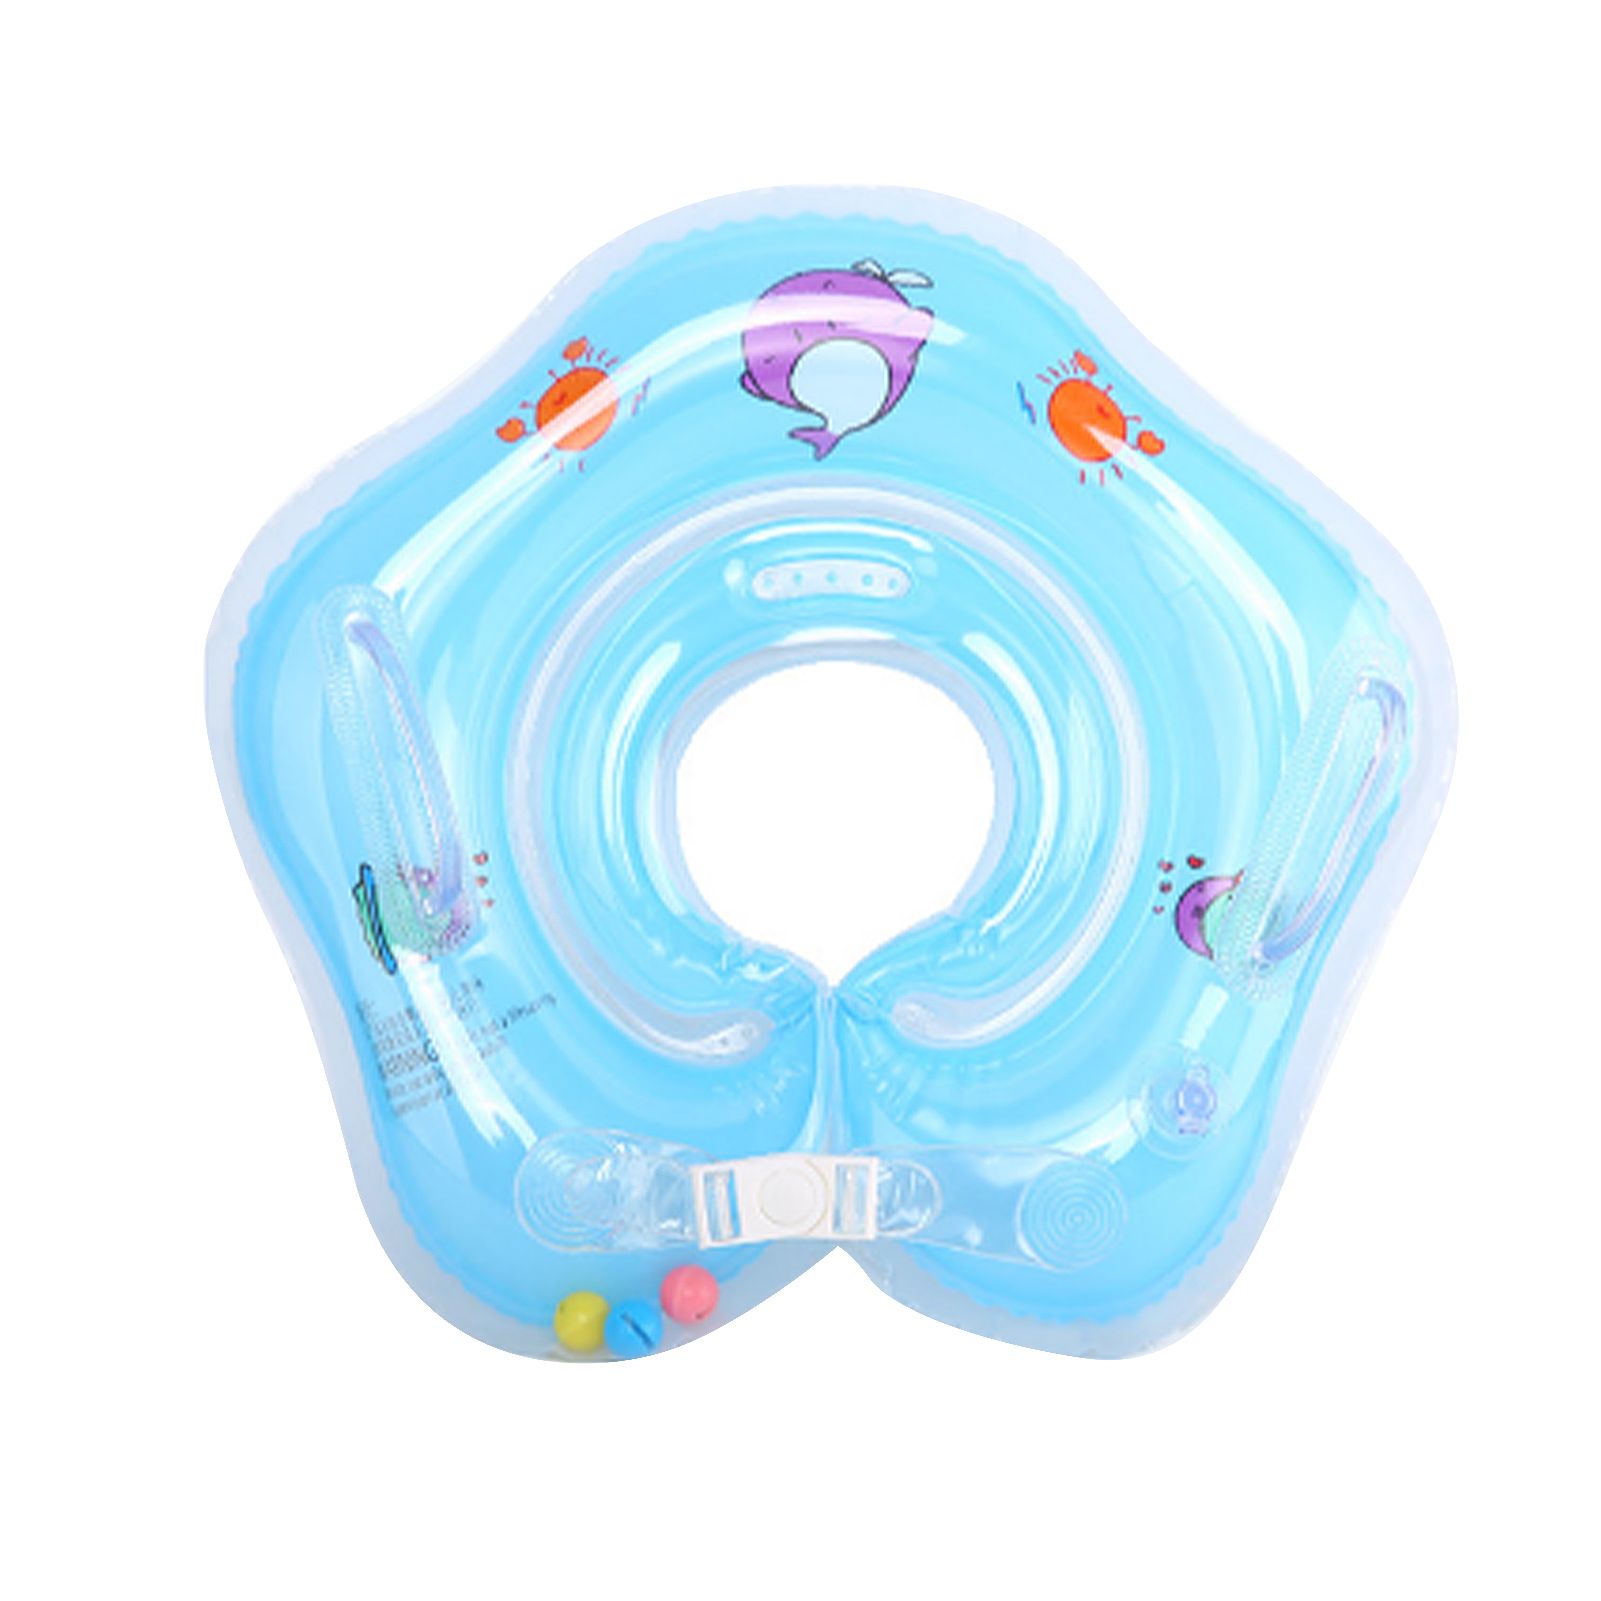 Надувной круг для купания детей Baby swimmer. Детский круг на шею для купания. Воротник для купания младенцев. Воротник для плавания новорожденных. Какая вода комфортна для купания